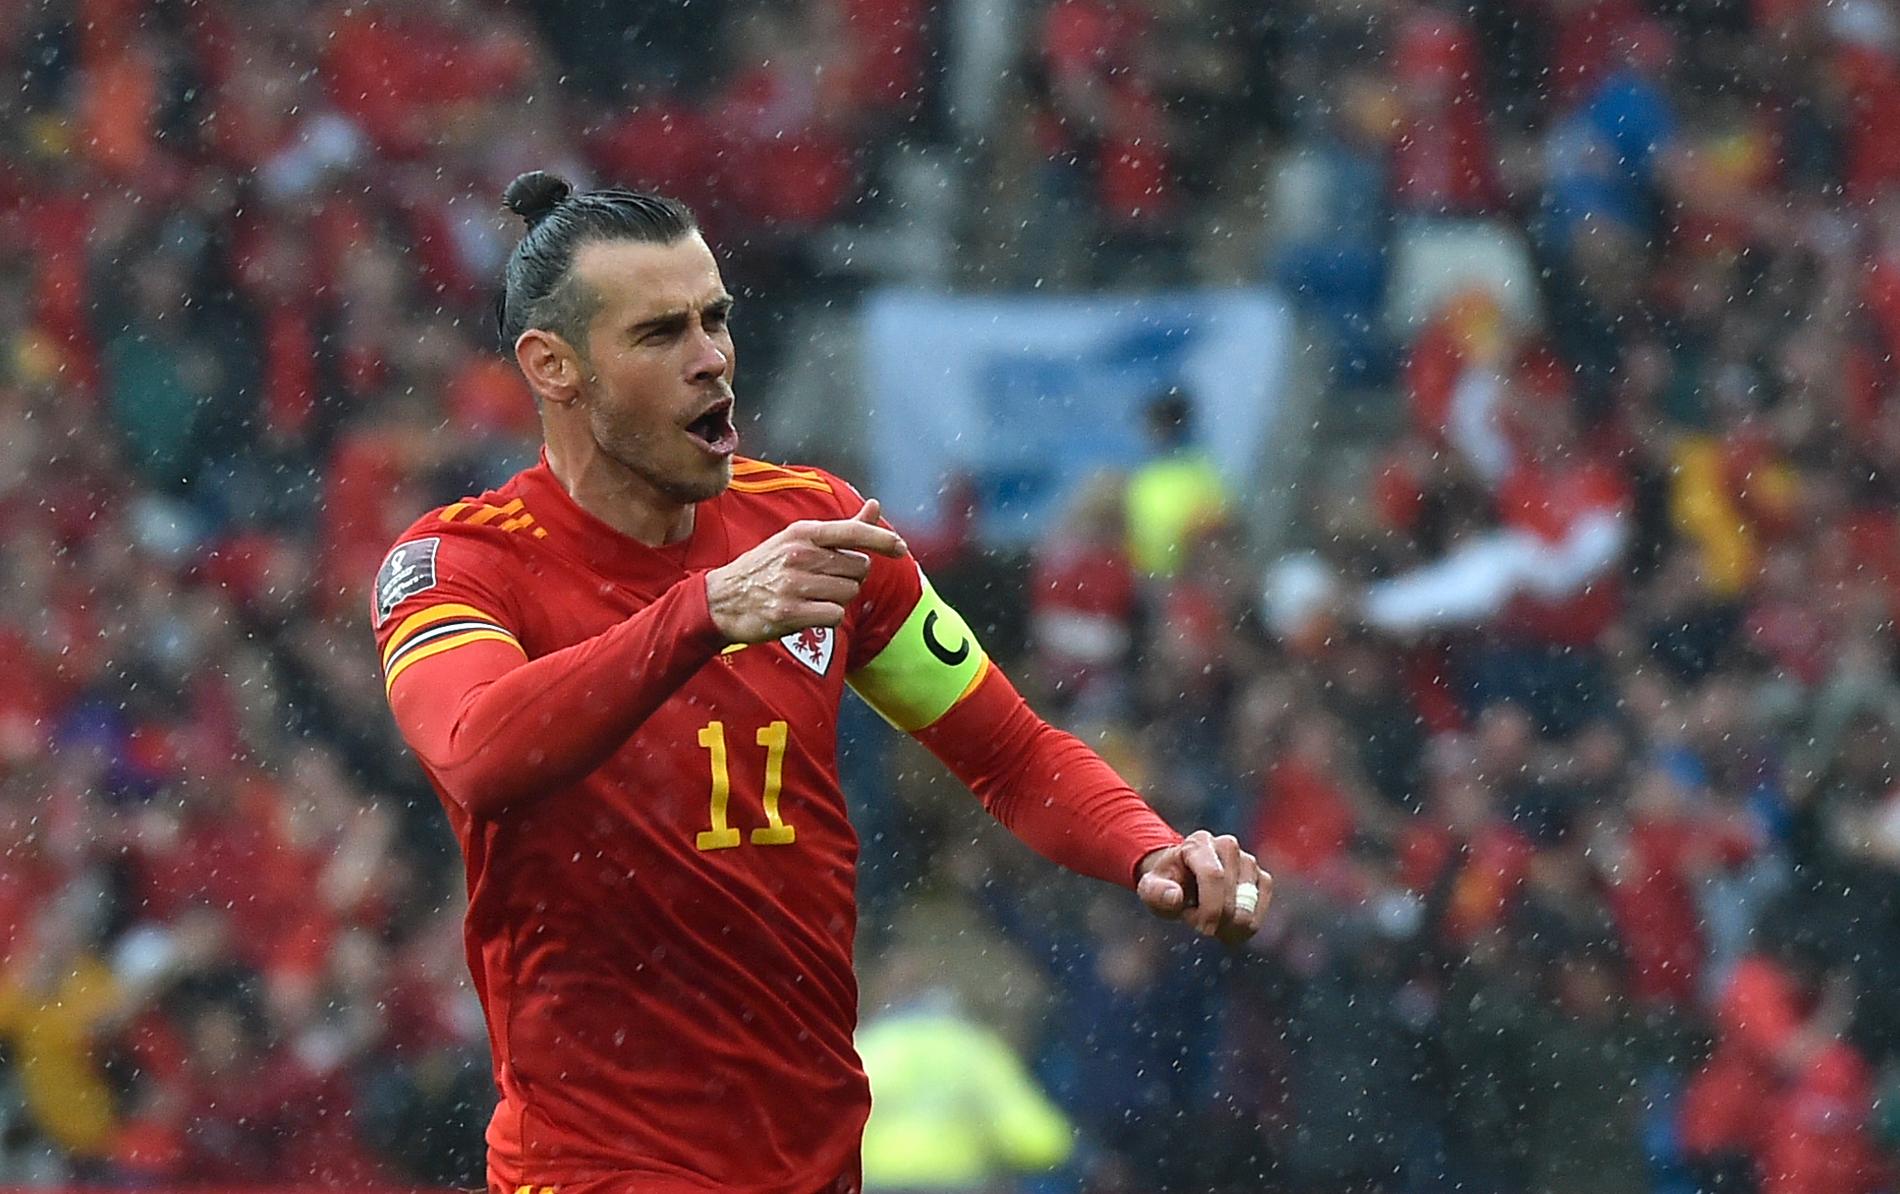 Wales Gareth Bale slog frisparken som Ukrainas lagkapten Andrij Jarmolenko nickskarvade in i eget mål, vilket gav Wales VM-platsen i Qatar senare i år.